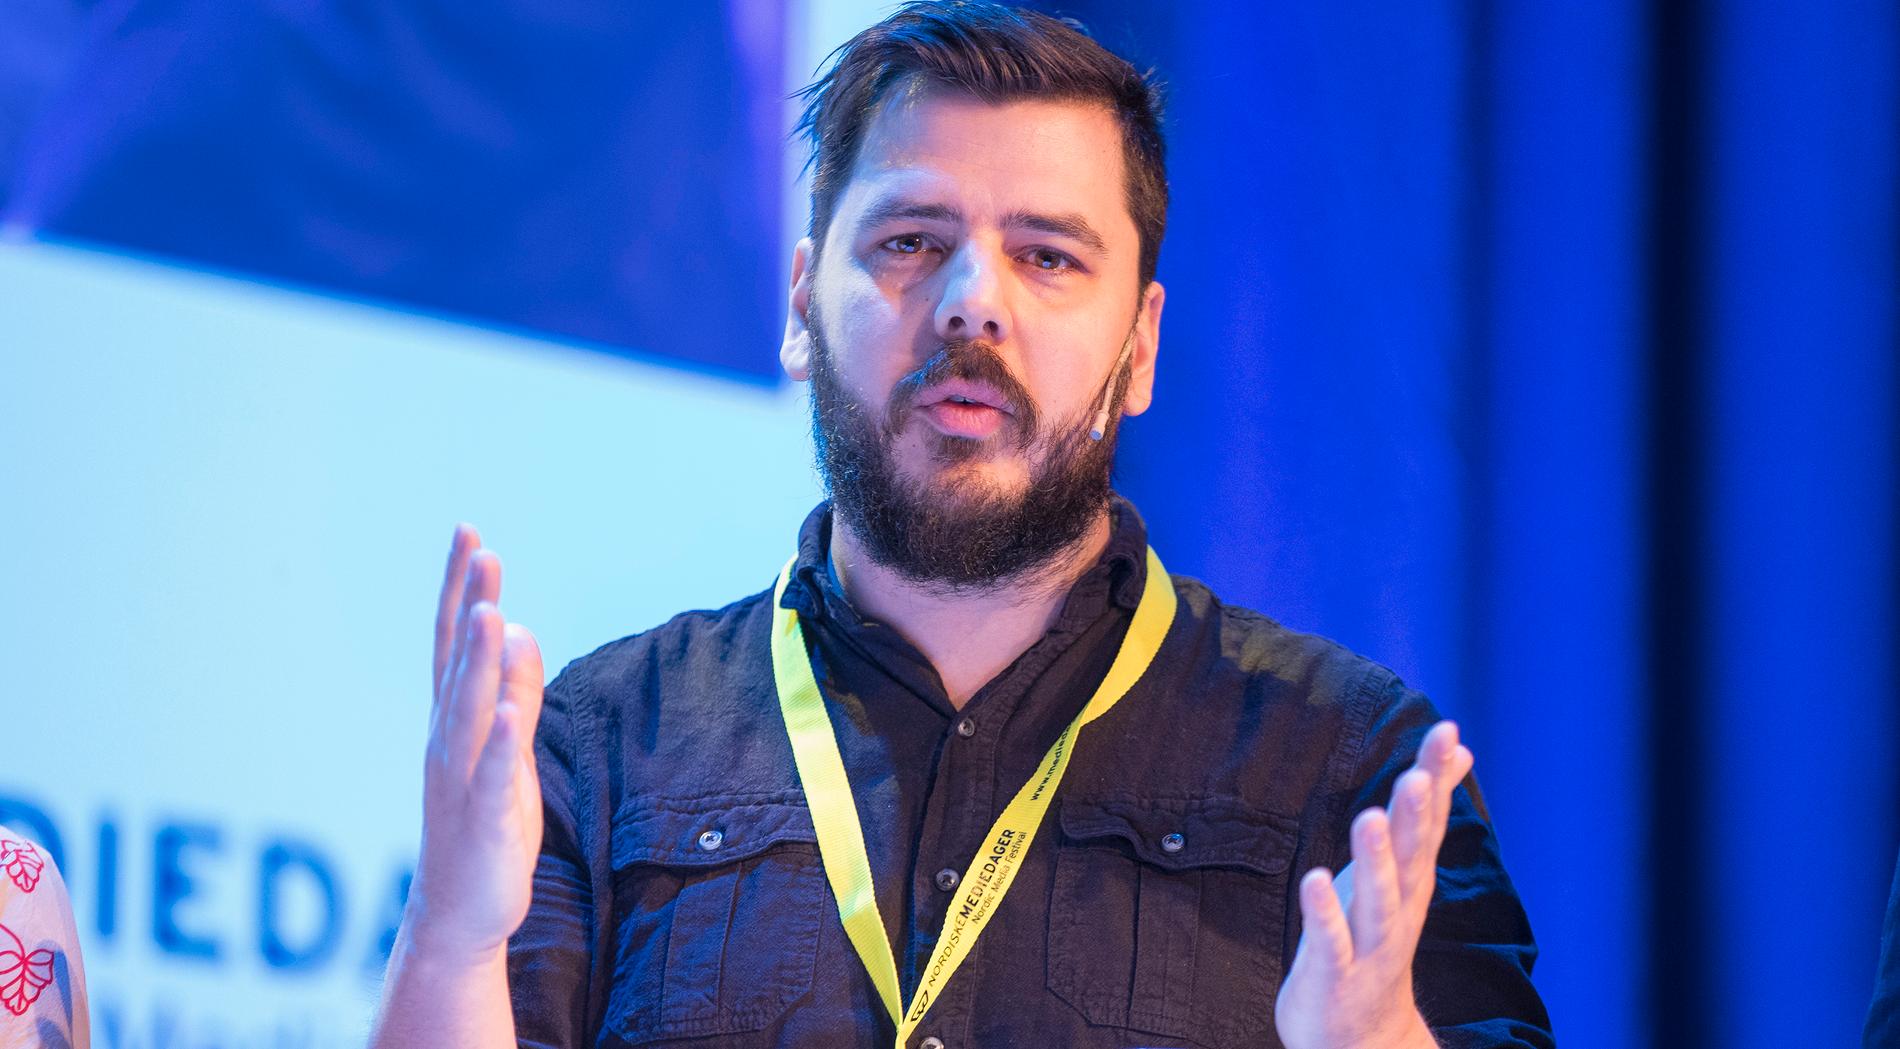 Chang Frick, grundare av högerextrema sajten Nyheter i dag,  ska medverka i nya SVT-serien ”Invandring för svenskar”.